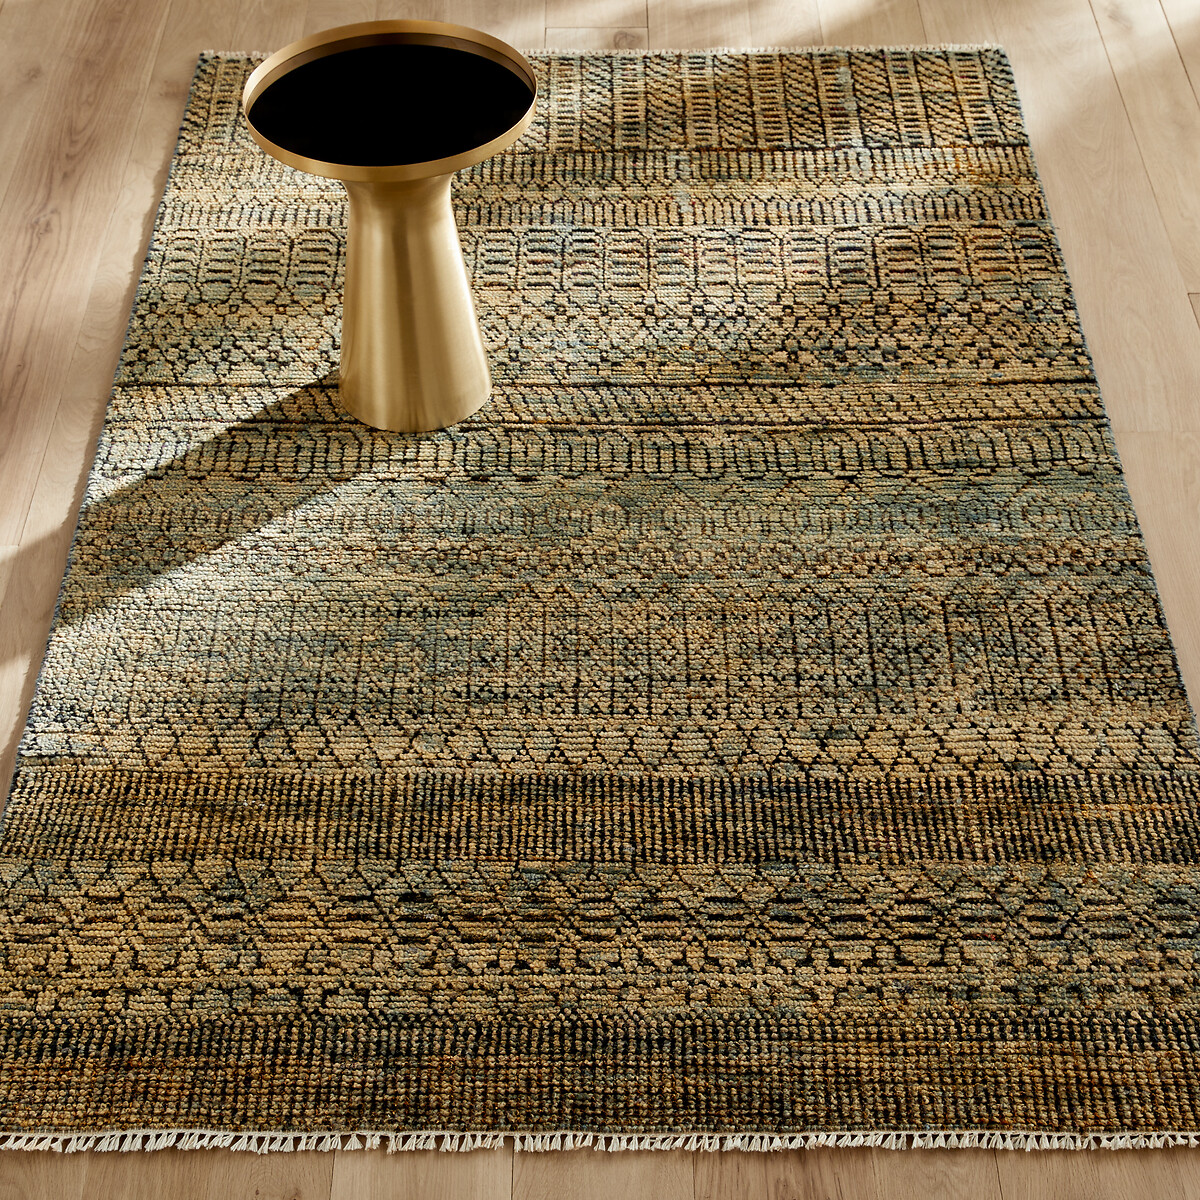 Begin Doe herleven leerling Gerecycleerd tapijt in sariszijde nagari oker/celadon Am.Pm | La Redoute